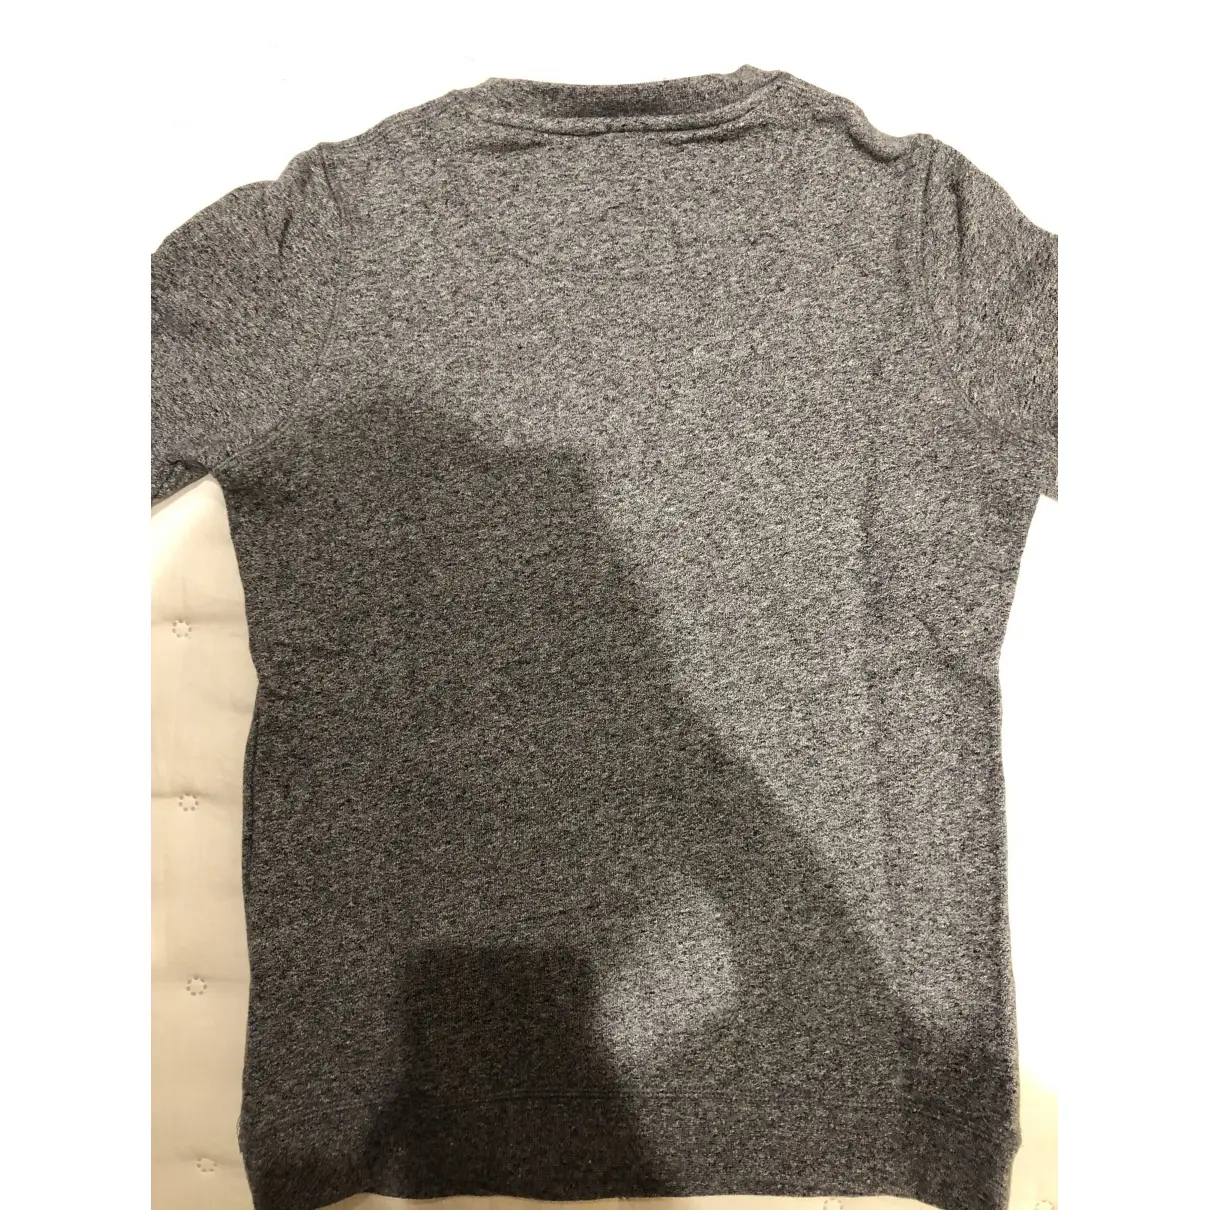 Buy Kenzo Sweatshirt online